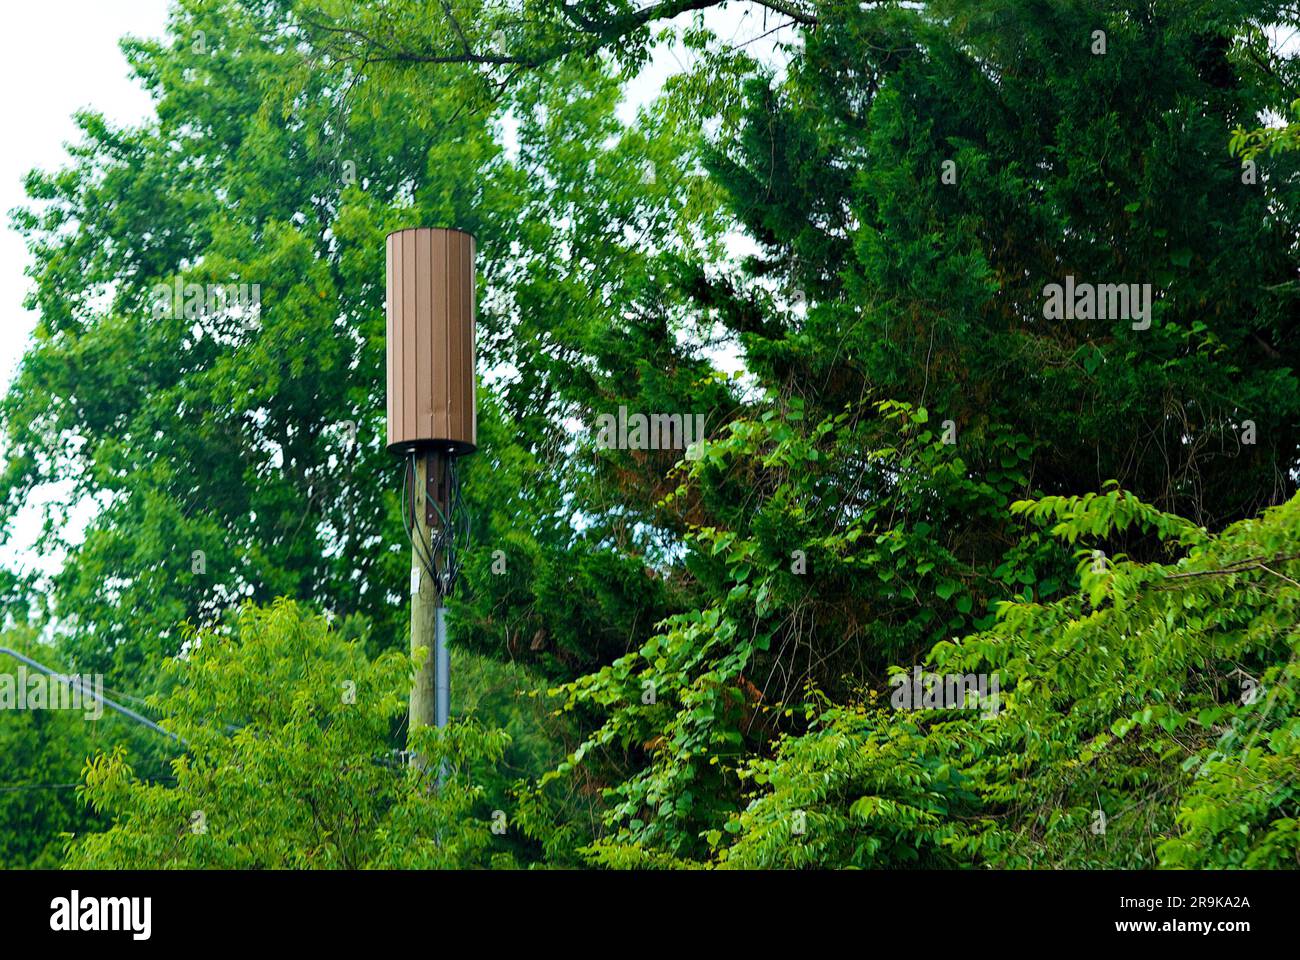 Une antenne de communication mobile 5G utilisée pour les données haut débit se distingue parmi les arbres d'un quartier de banlieue fortement boisé. Banque D'Images